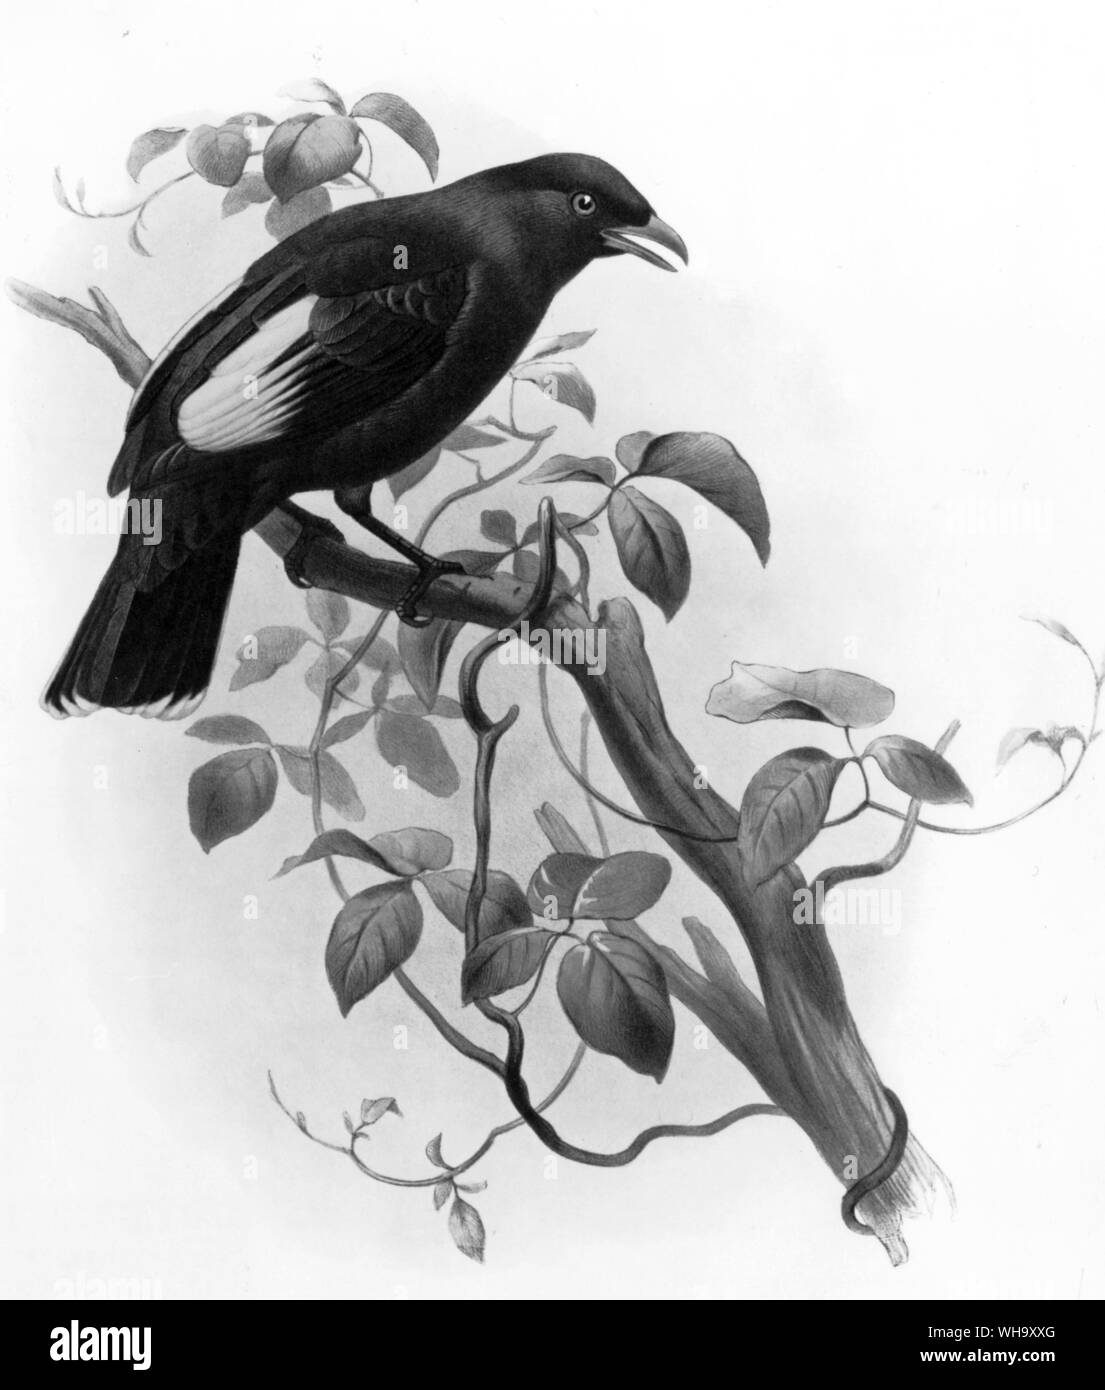 Eine rätselhafte bowerbird (Familie), ptilonorhynchus Ptilonorthynchidae rawnsleyi. Handcolorierte Lithographie von Josef Wolf und Joseph Smit von D.G. Elliot's Monographie des Paradiseidae (London, 1873). Stockfoto